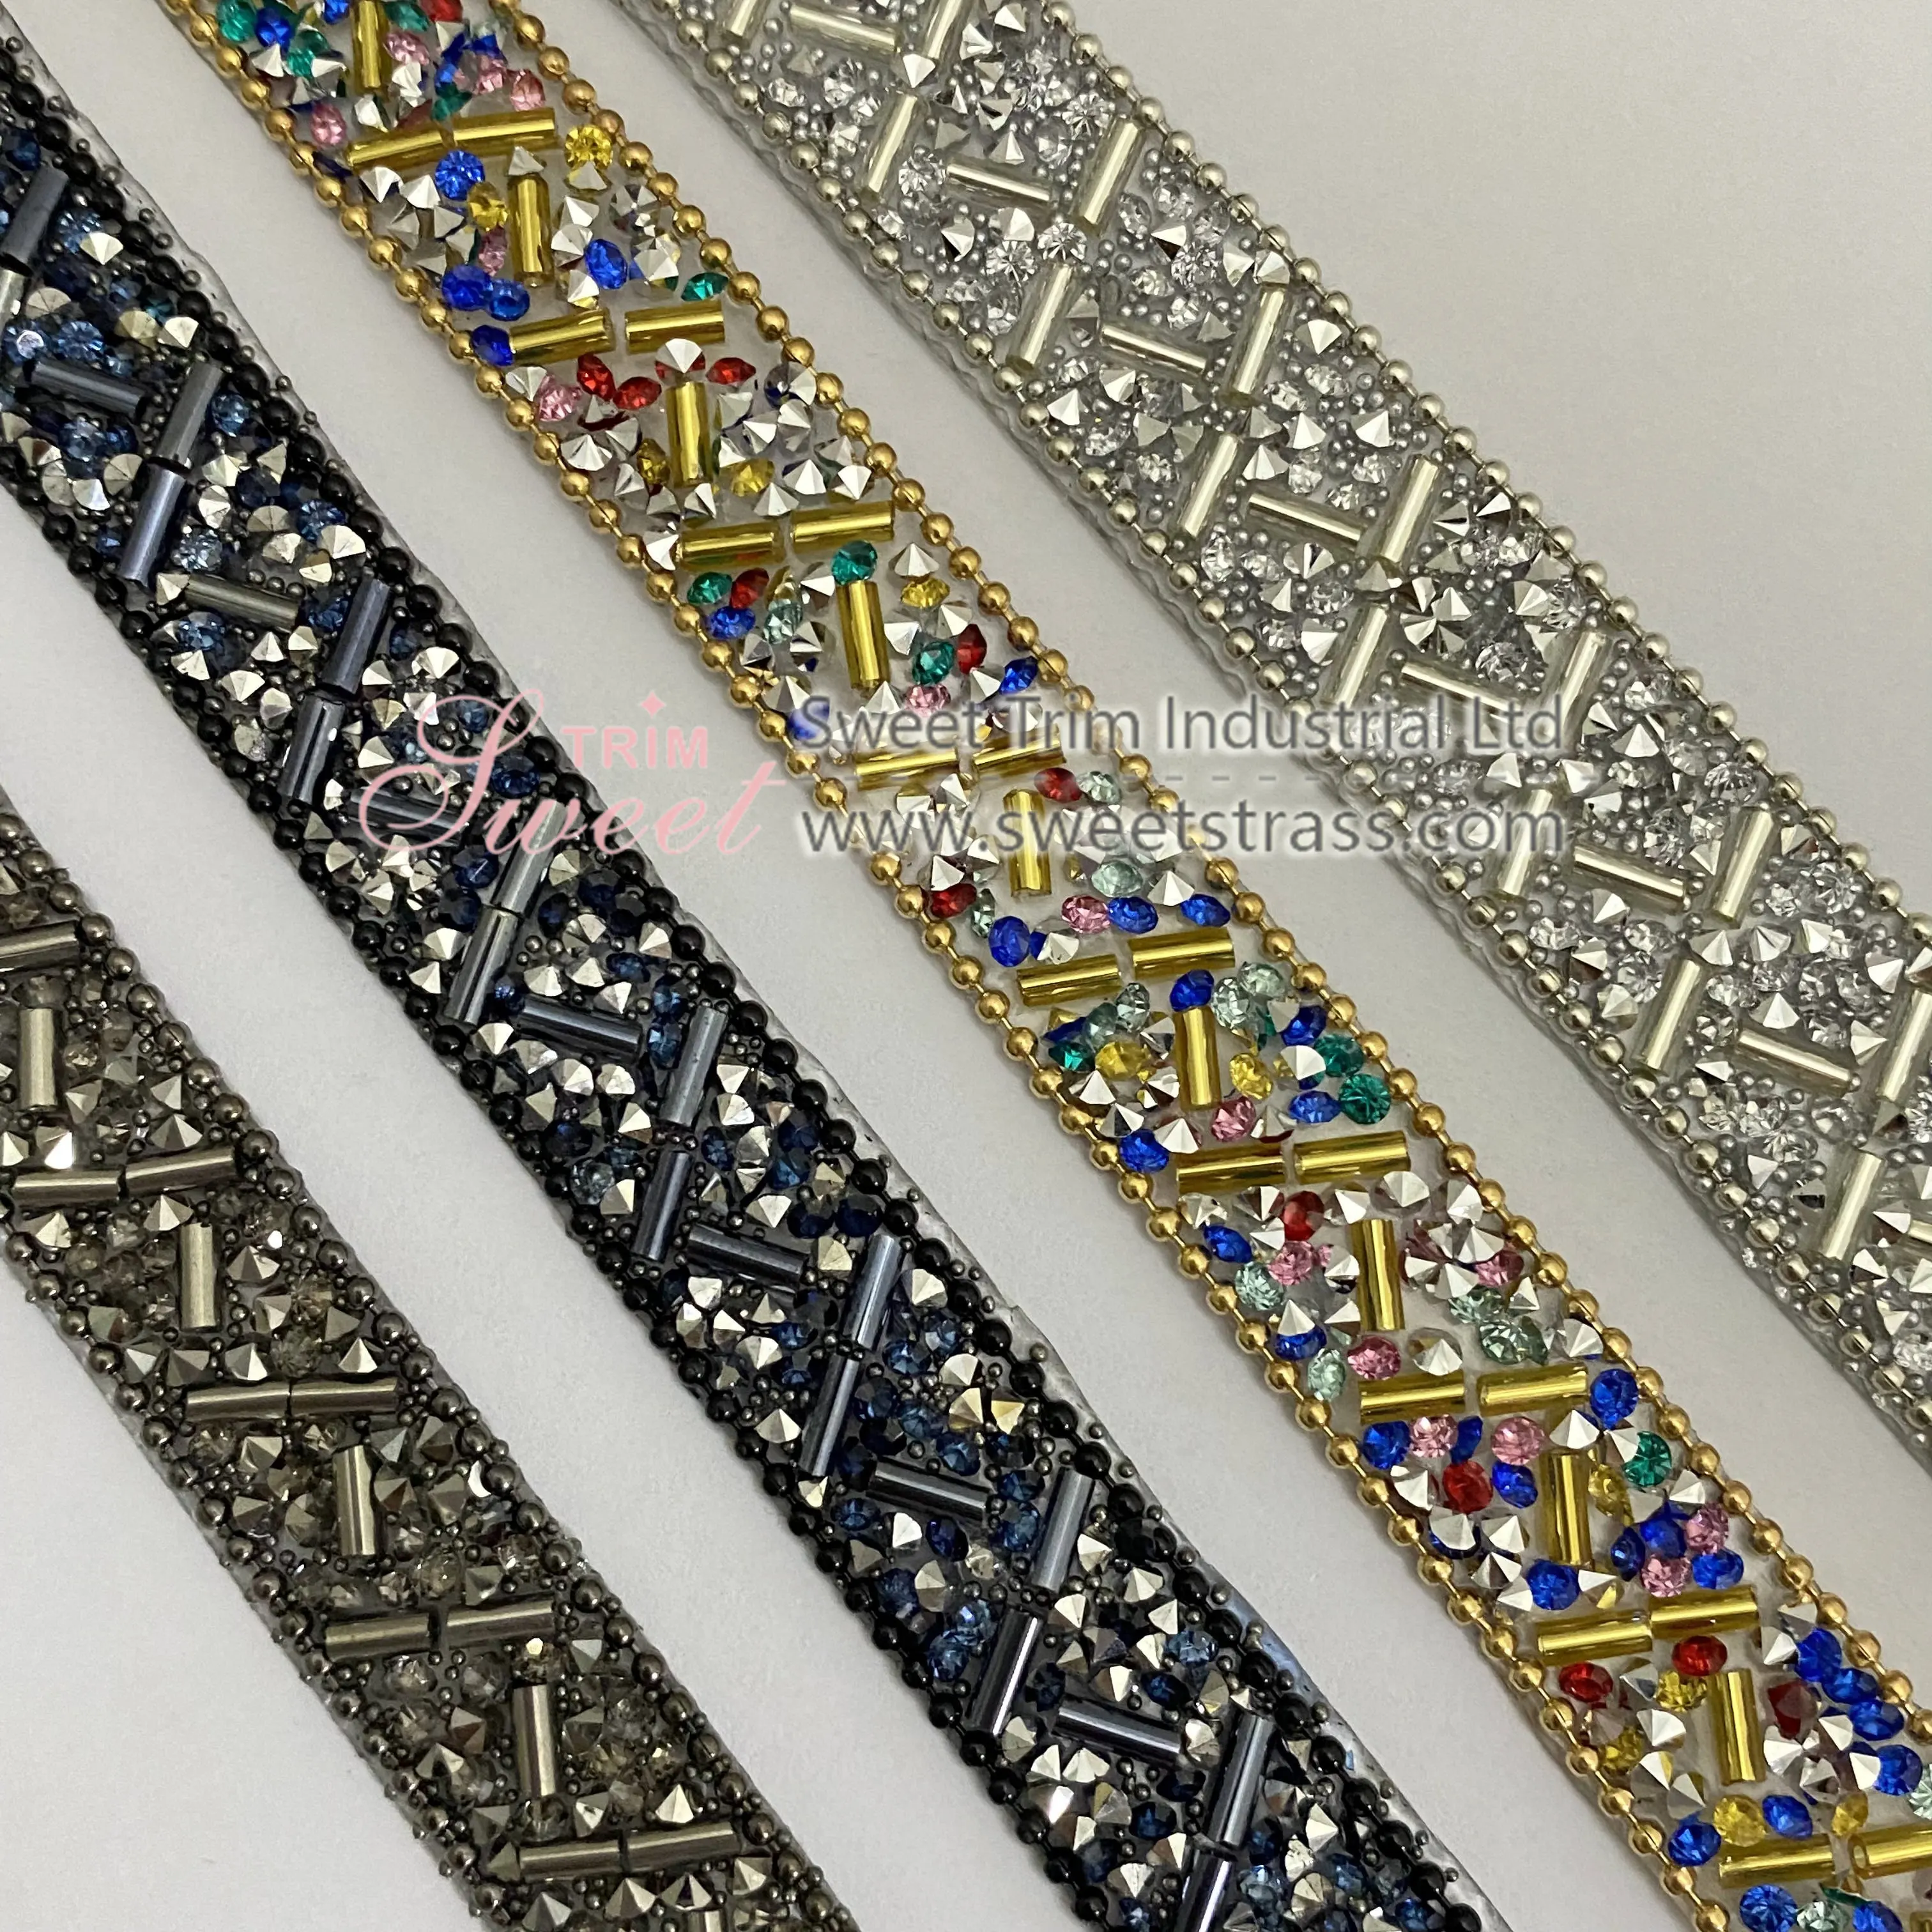 Keluaran baru besi jaring berlian imitasi perbaikan panas pada transfer pemangkas manik-manik kristal untuk tas dan sepatu menerima desain pelanggan